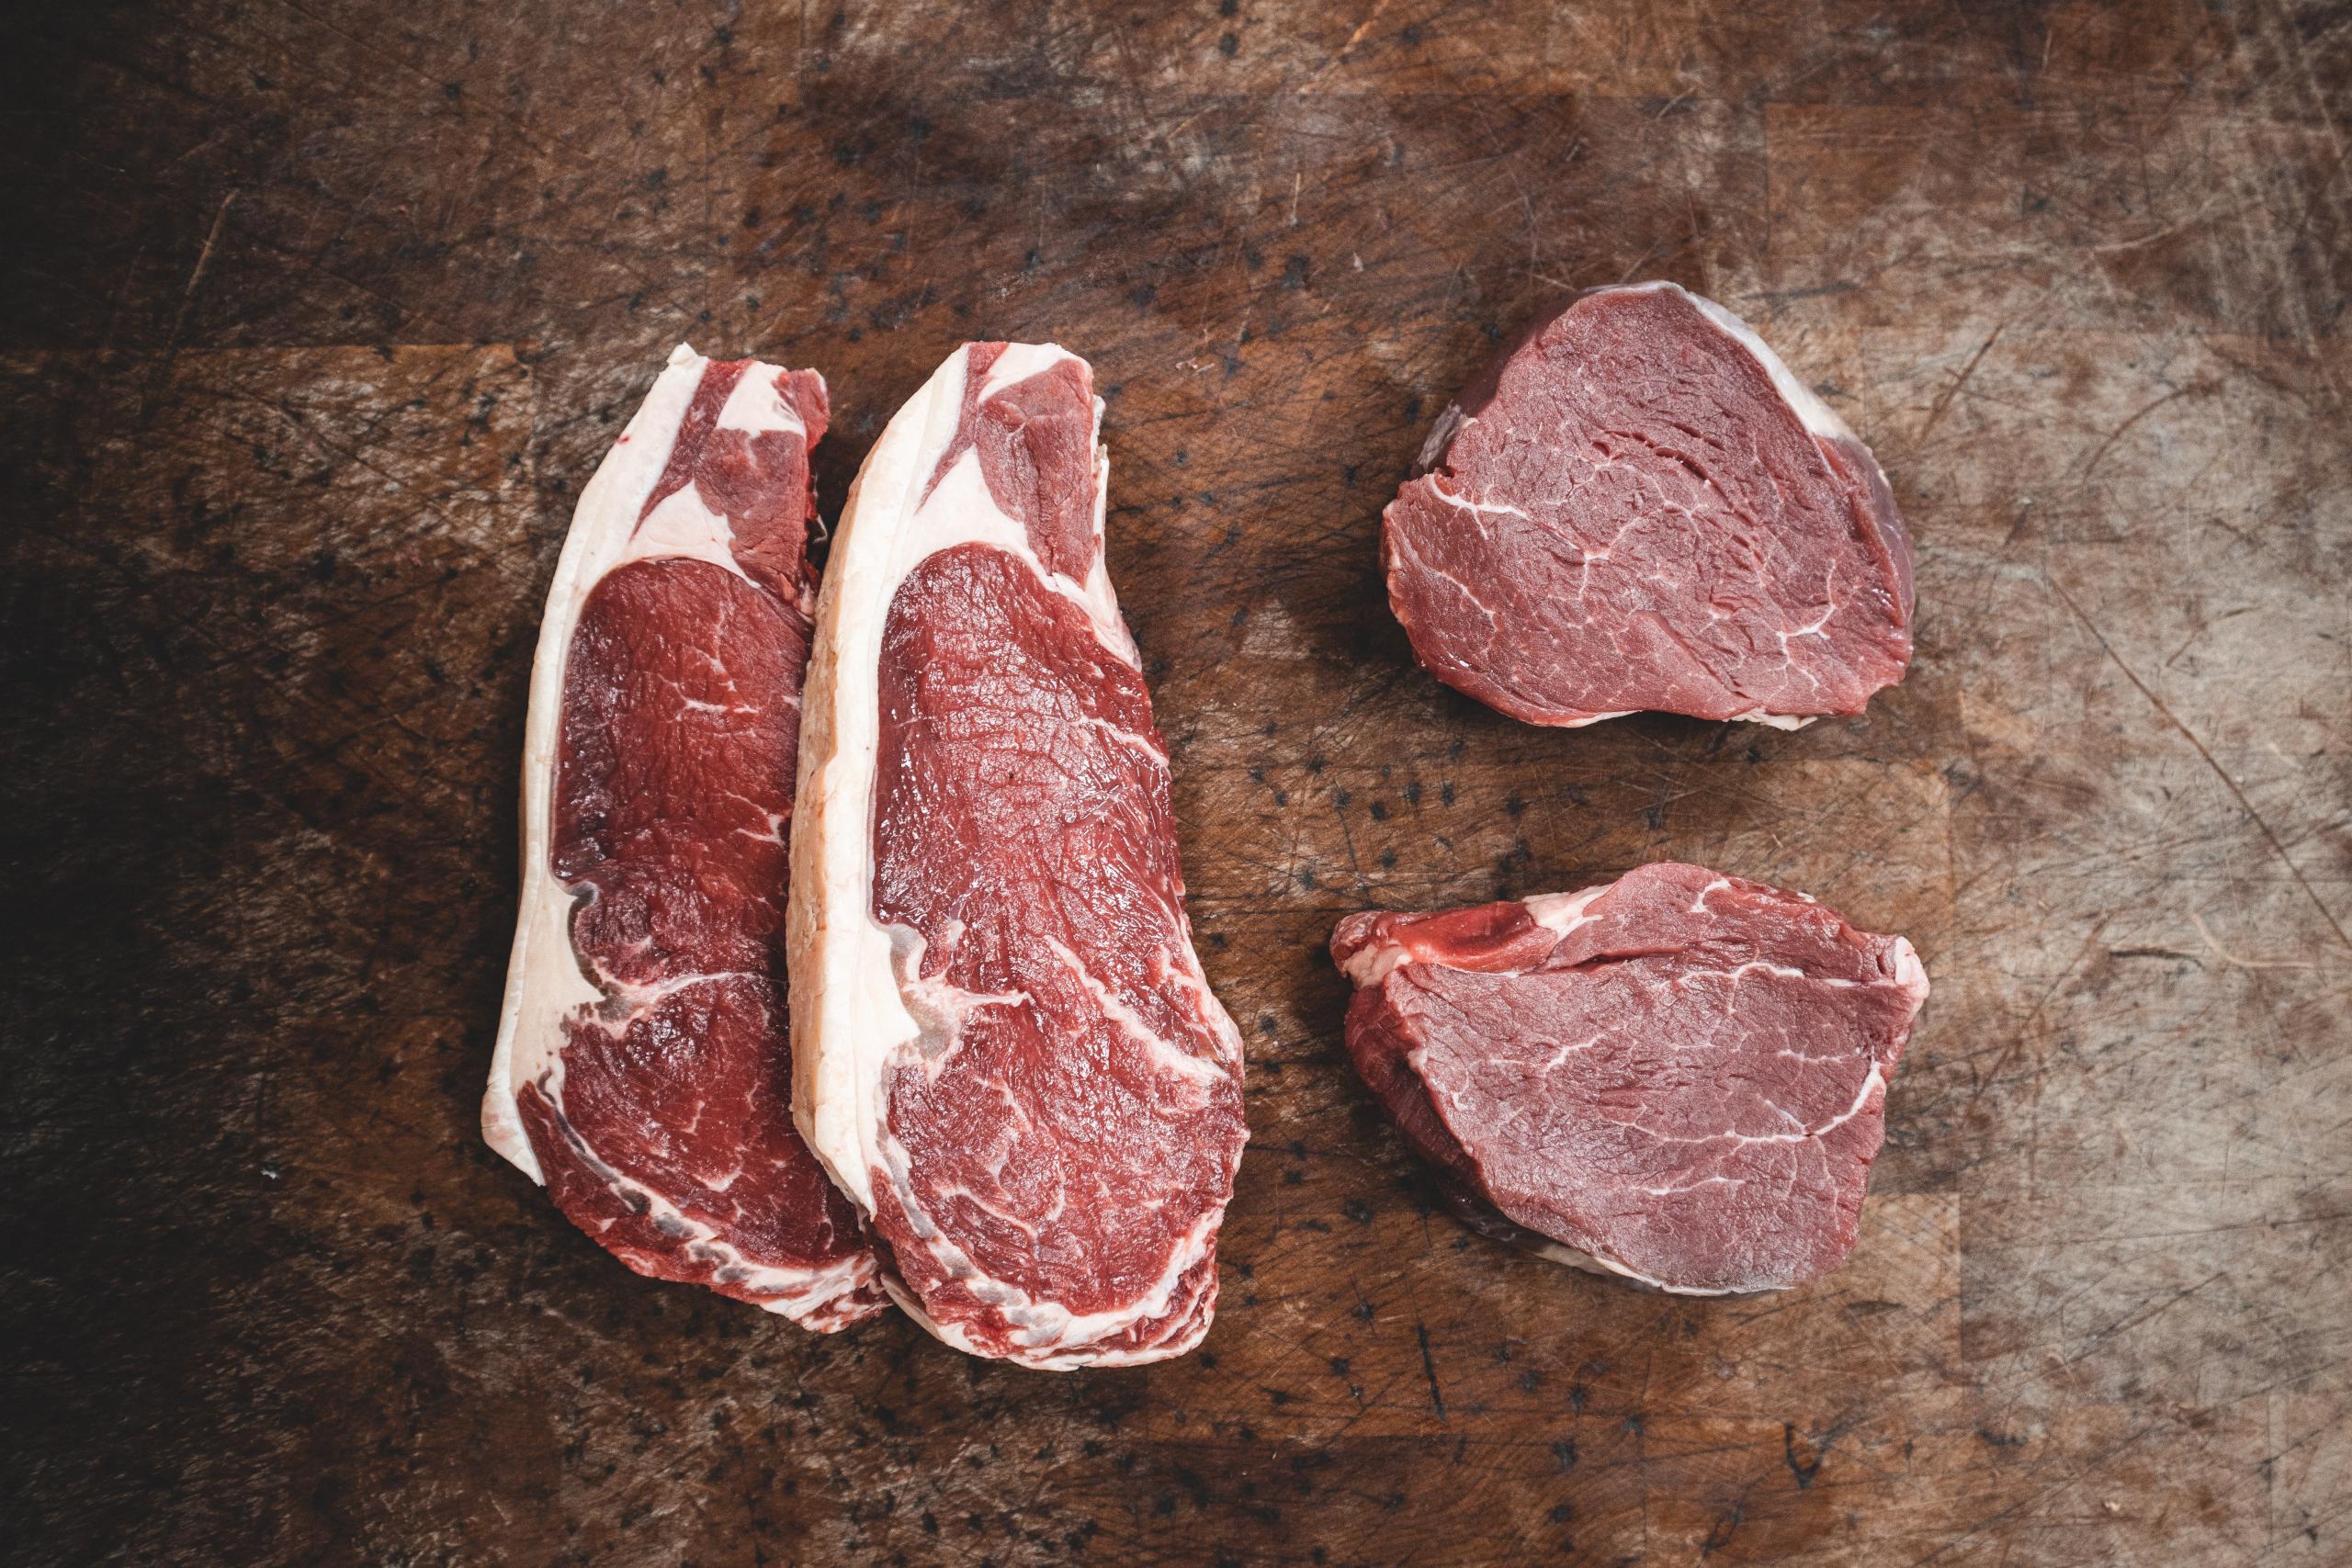 Hovězí maso - jaké části na co použít? | Apetit Online